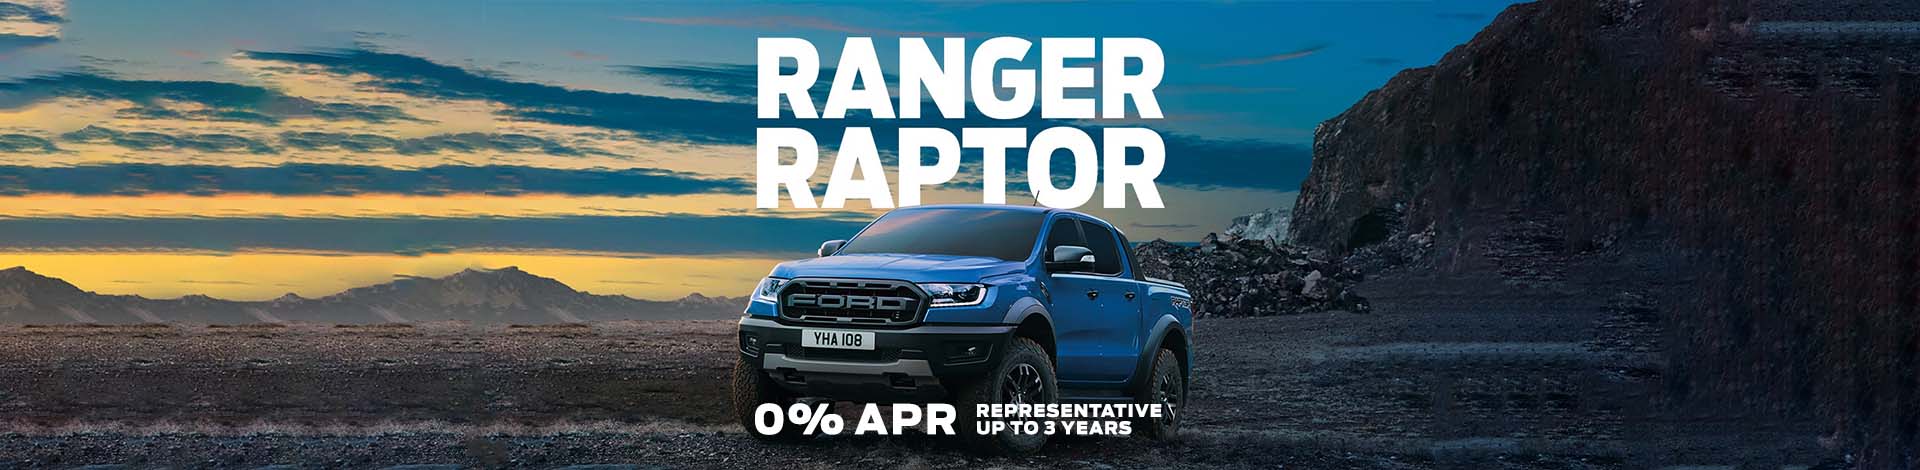 Ford Ranger Raptor Page